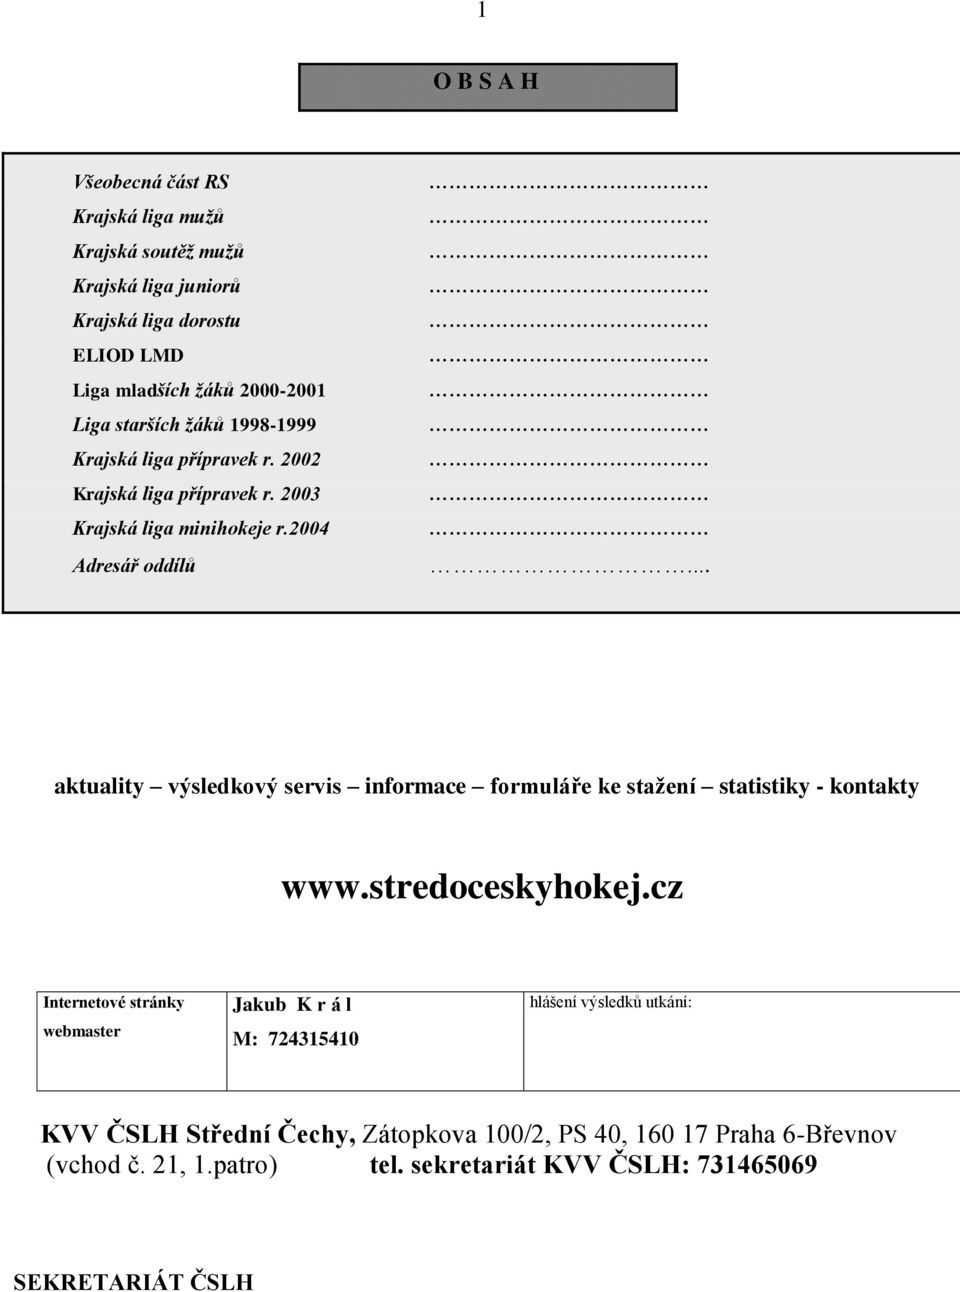 .. aktuality výsledkový servis informace formuláře ke stažení statistiky - kontakty www.stredoceskyhokej.